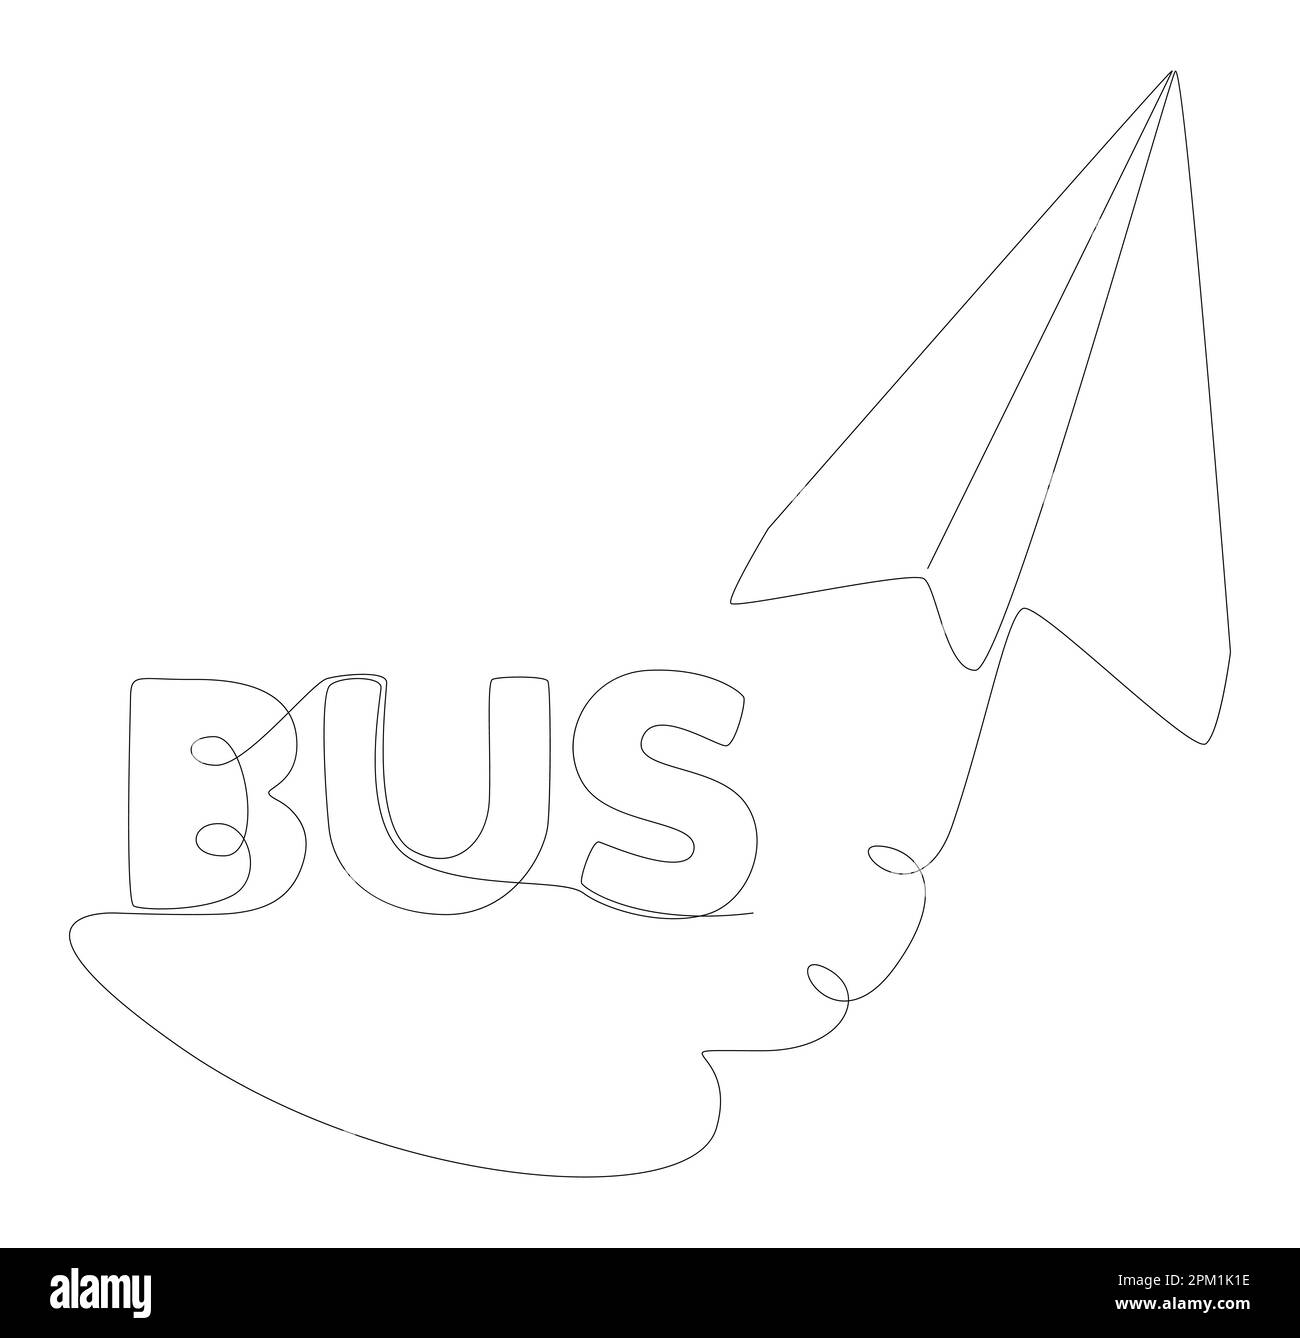 Eine durchgehende Zeile Papier-Flugzeug mit Bus-Text. Vektorkonzept zur Darstellung dünner Linien. Kontur Zeichnen kreativer Ideen. Stock Vektor